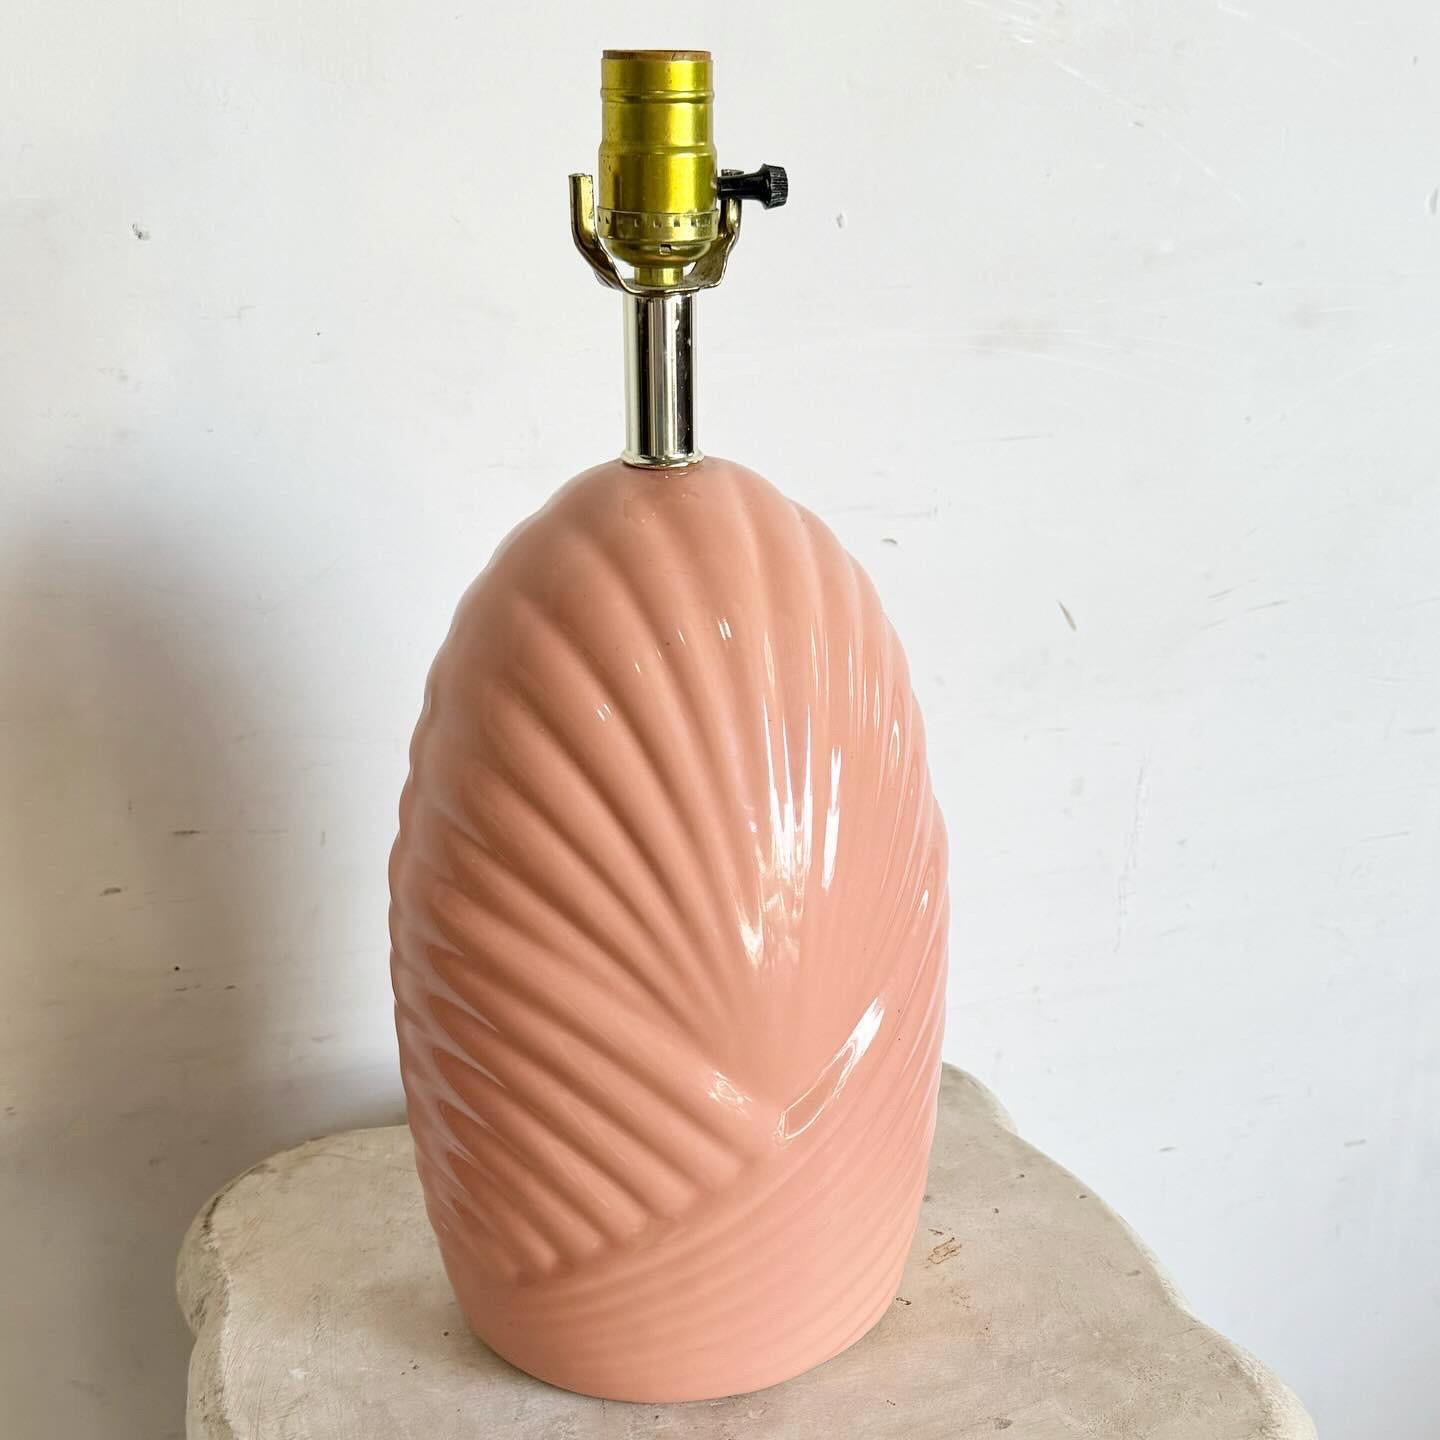 La lampe à poser Postmodern Sculpted Coral Pink Scalloped constitue un ajout captivant à tout espace contemporain. Doté d'un design postmoderne unique avec des bords festonnés ludiques, sa teinte rose corail vibrante ajoute de la chaleur et du